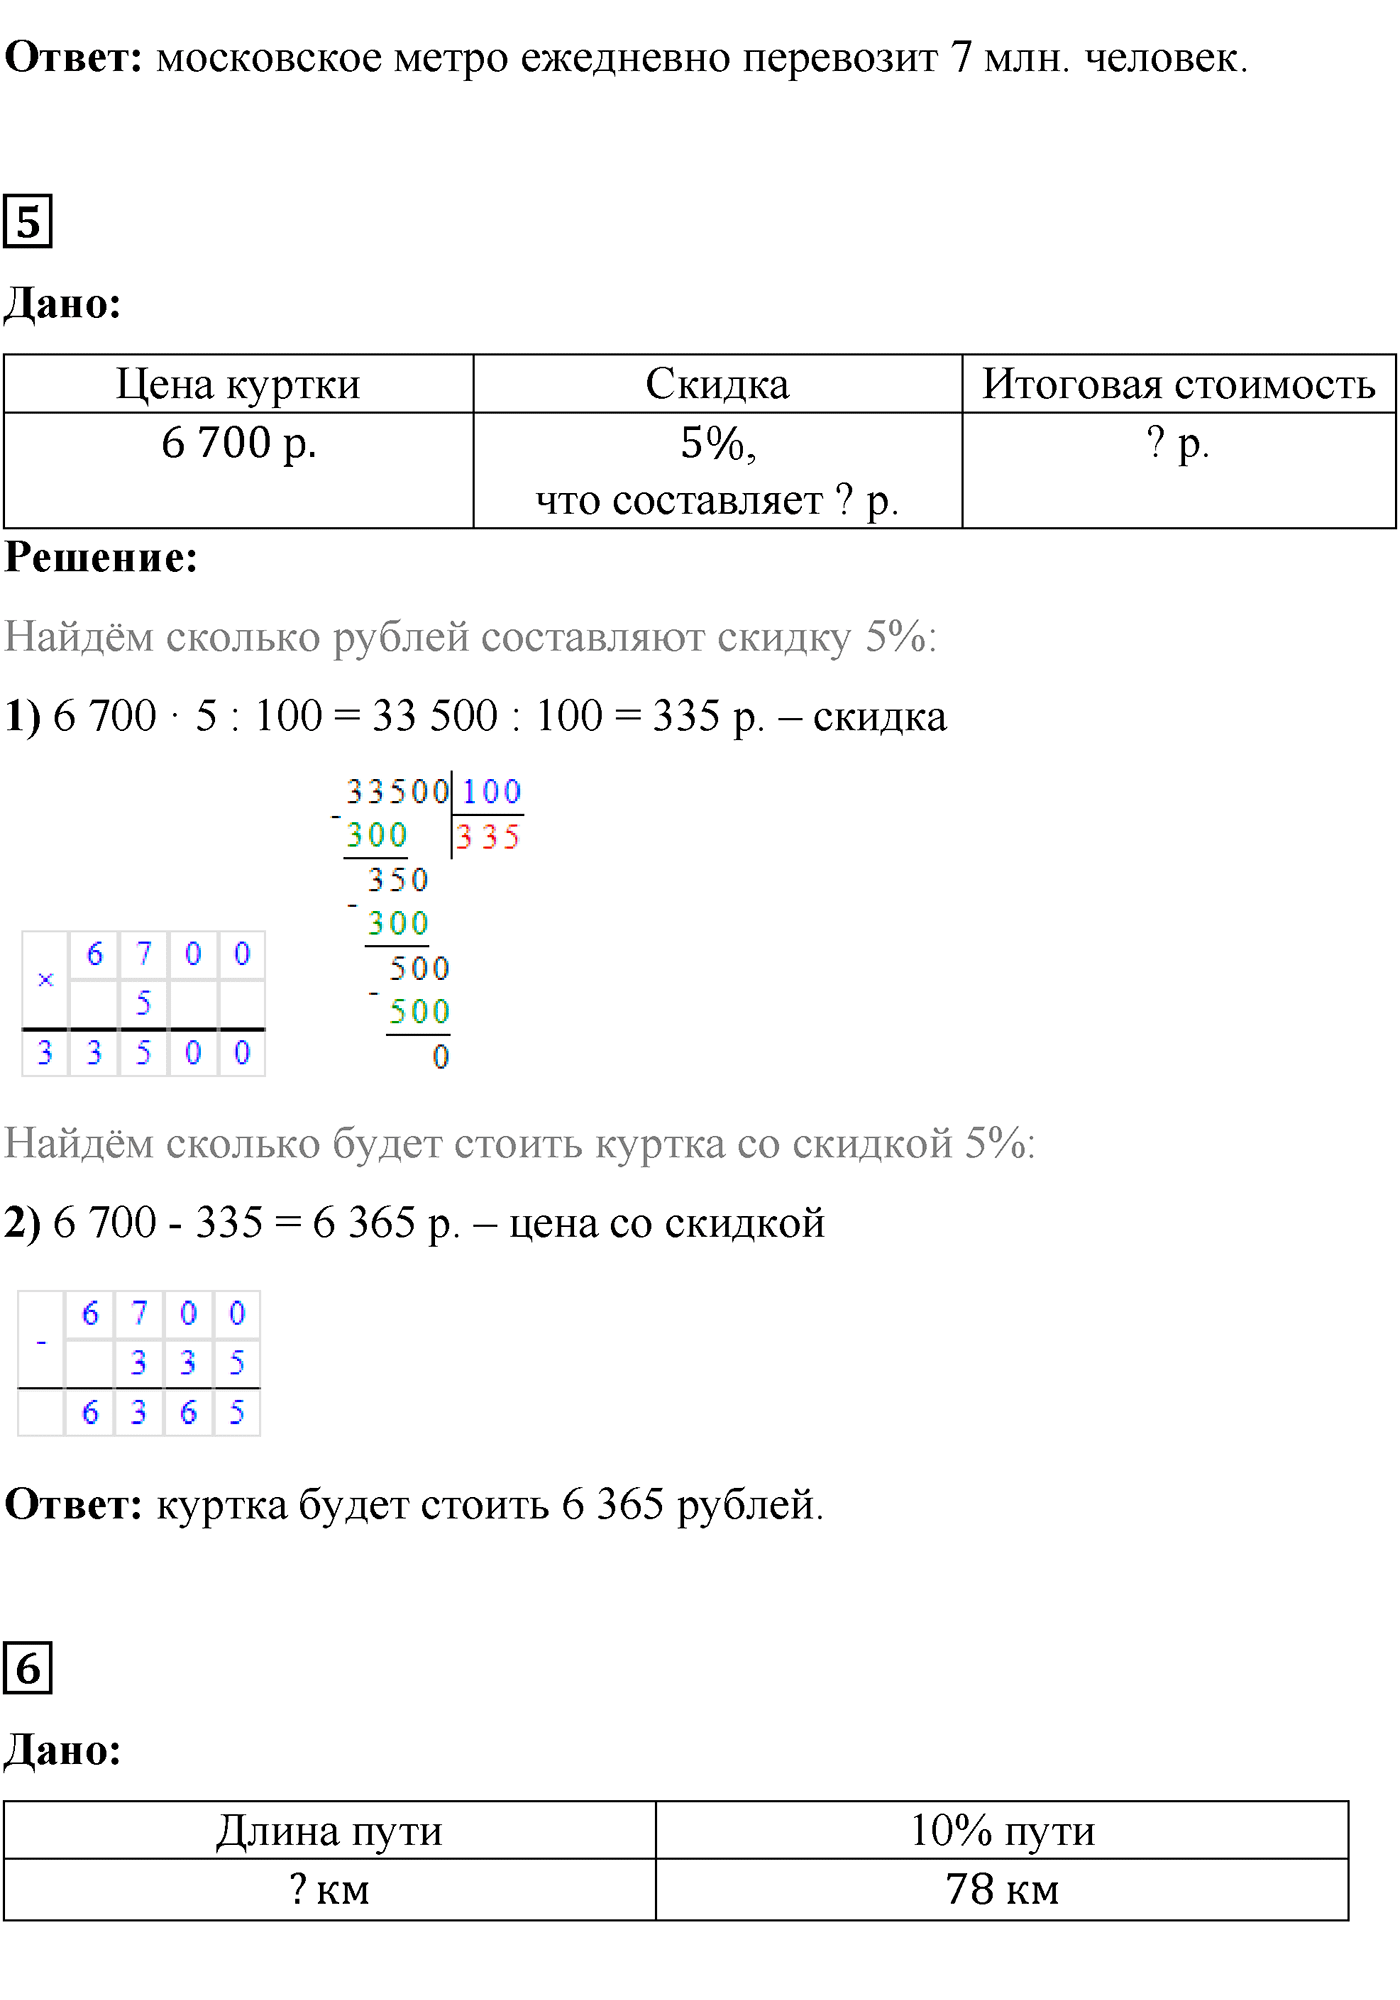 страница 157 задания для самопроверки математика 5 класс Виленкин 2022 часть 2